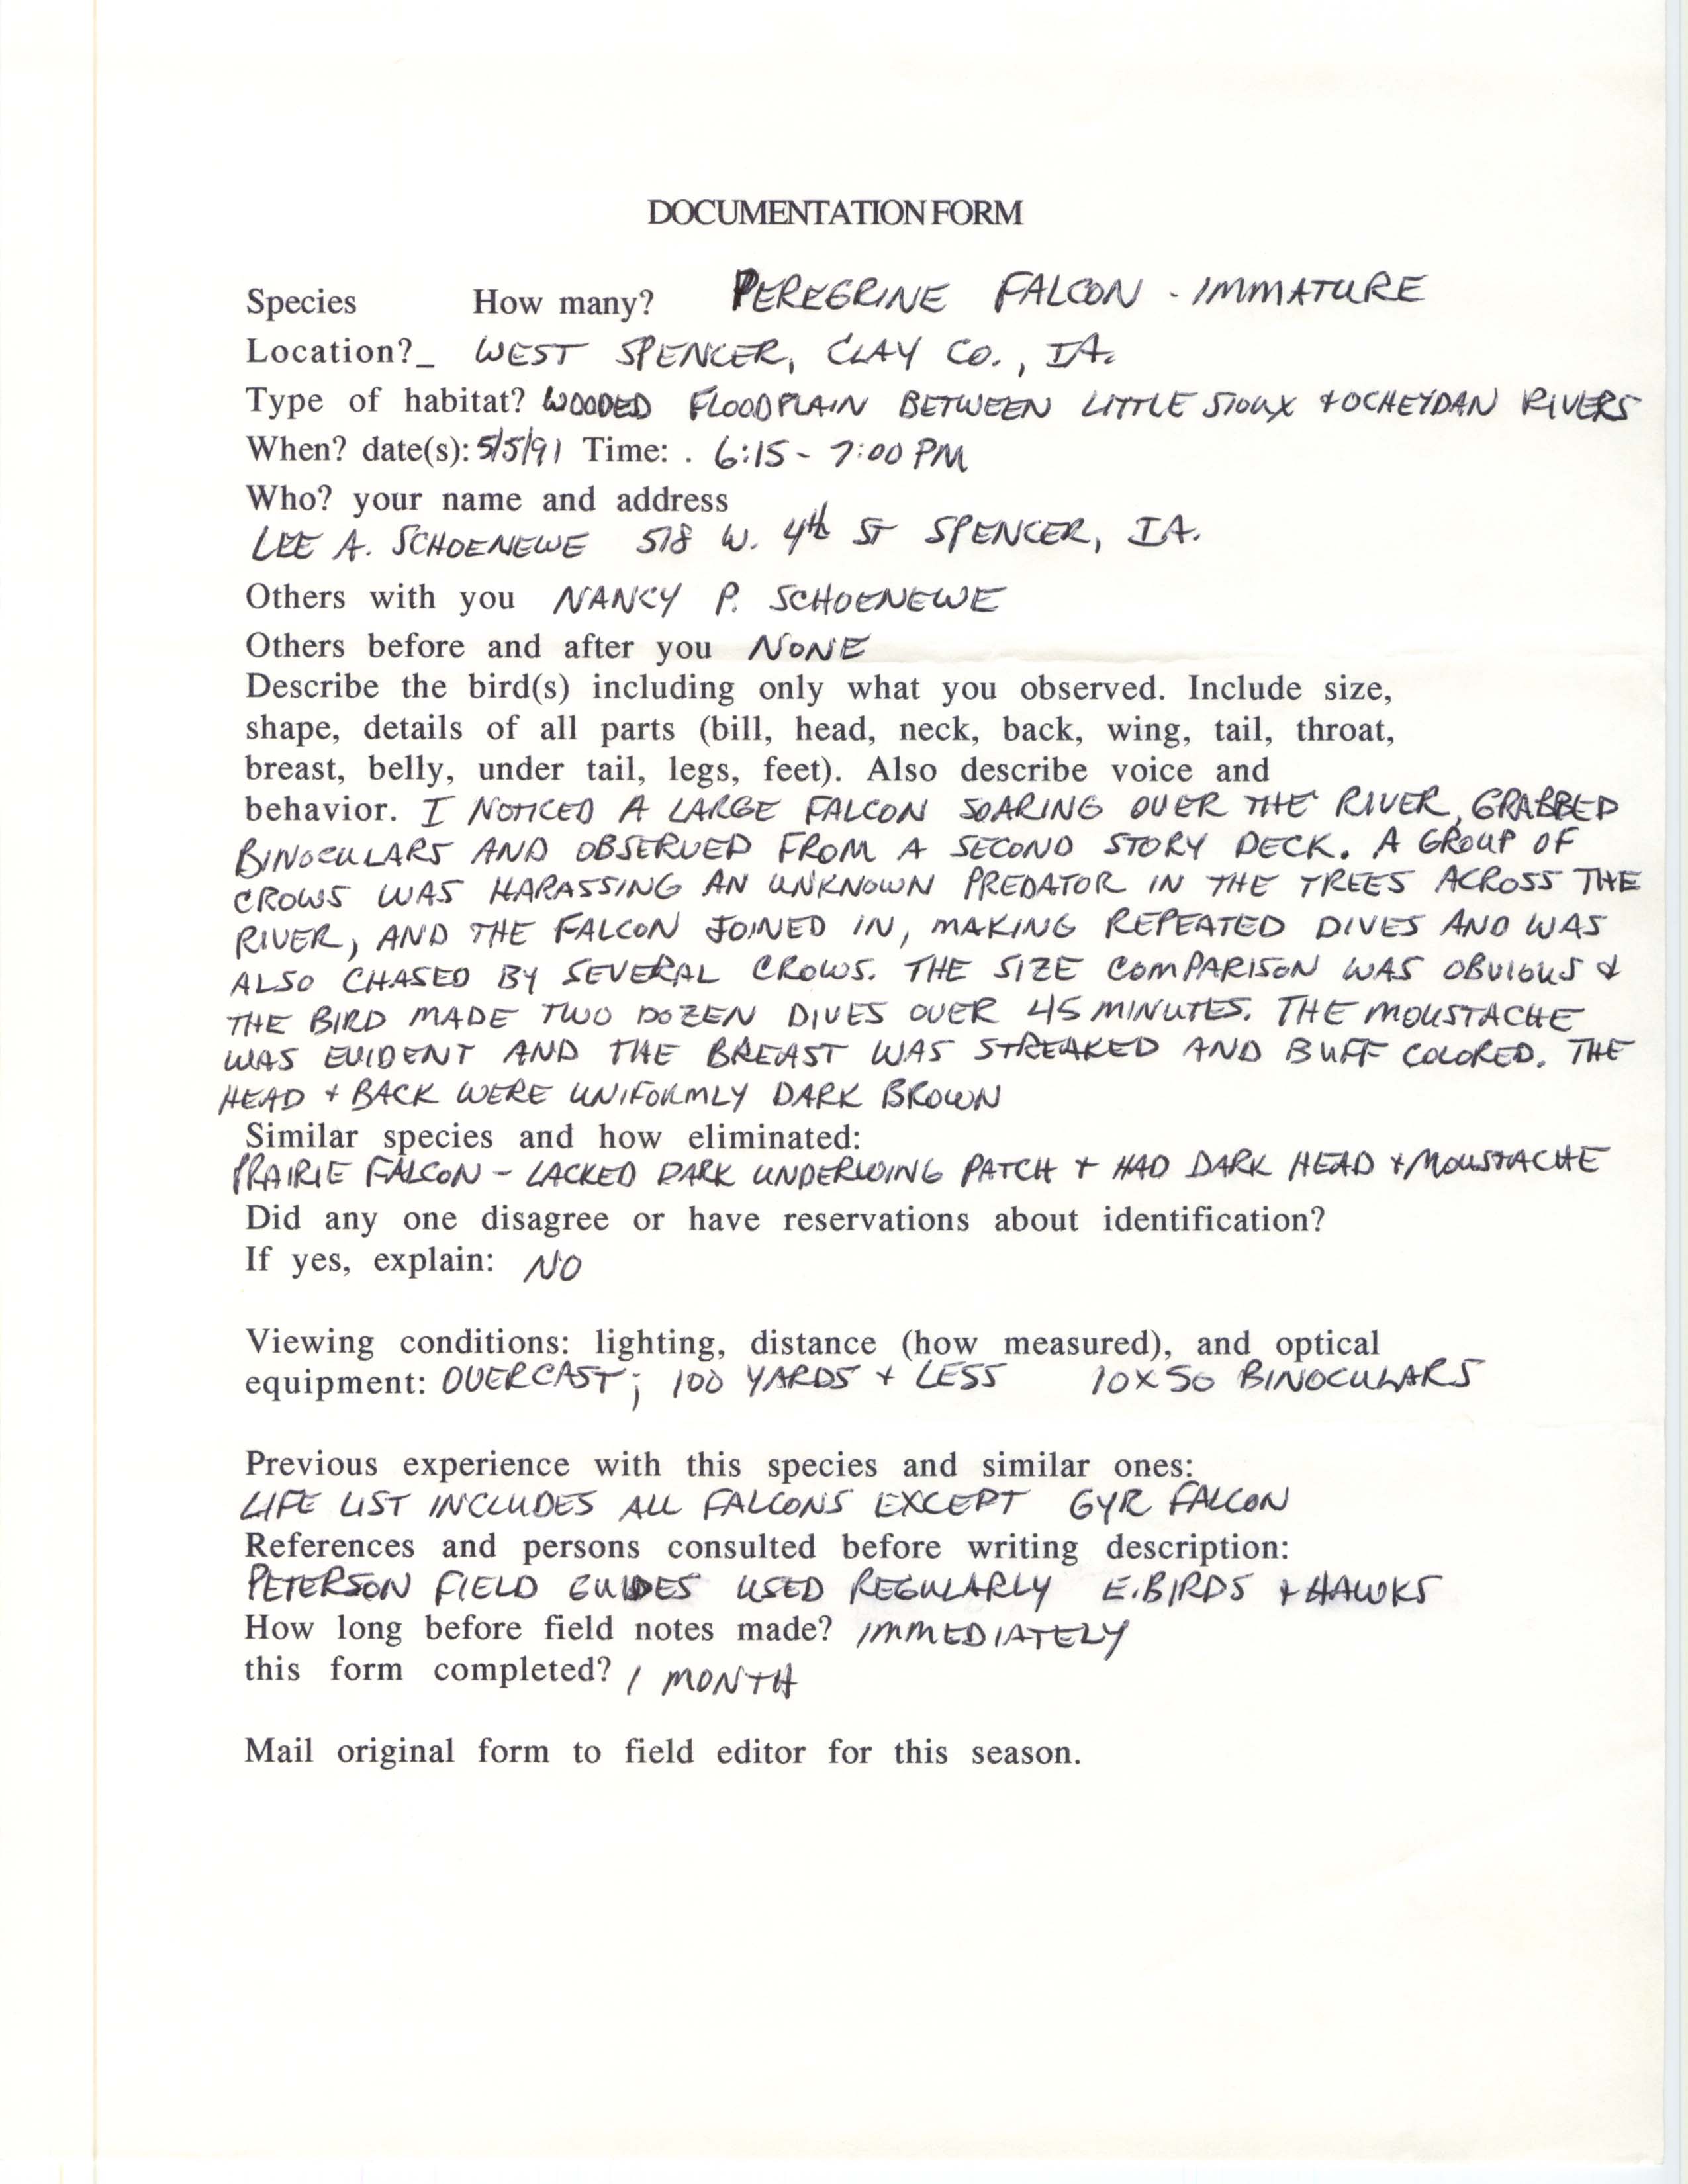 Rare bird documentation form for Peregrine Falcon at West Spencer, 1991